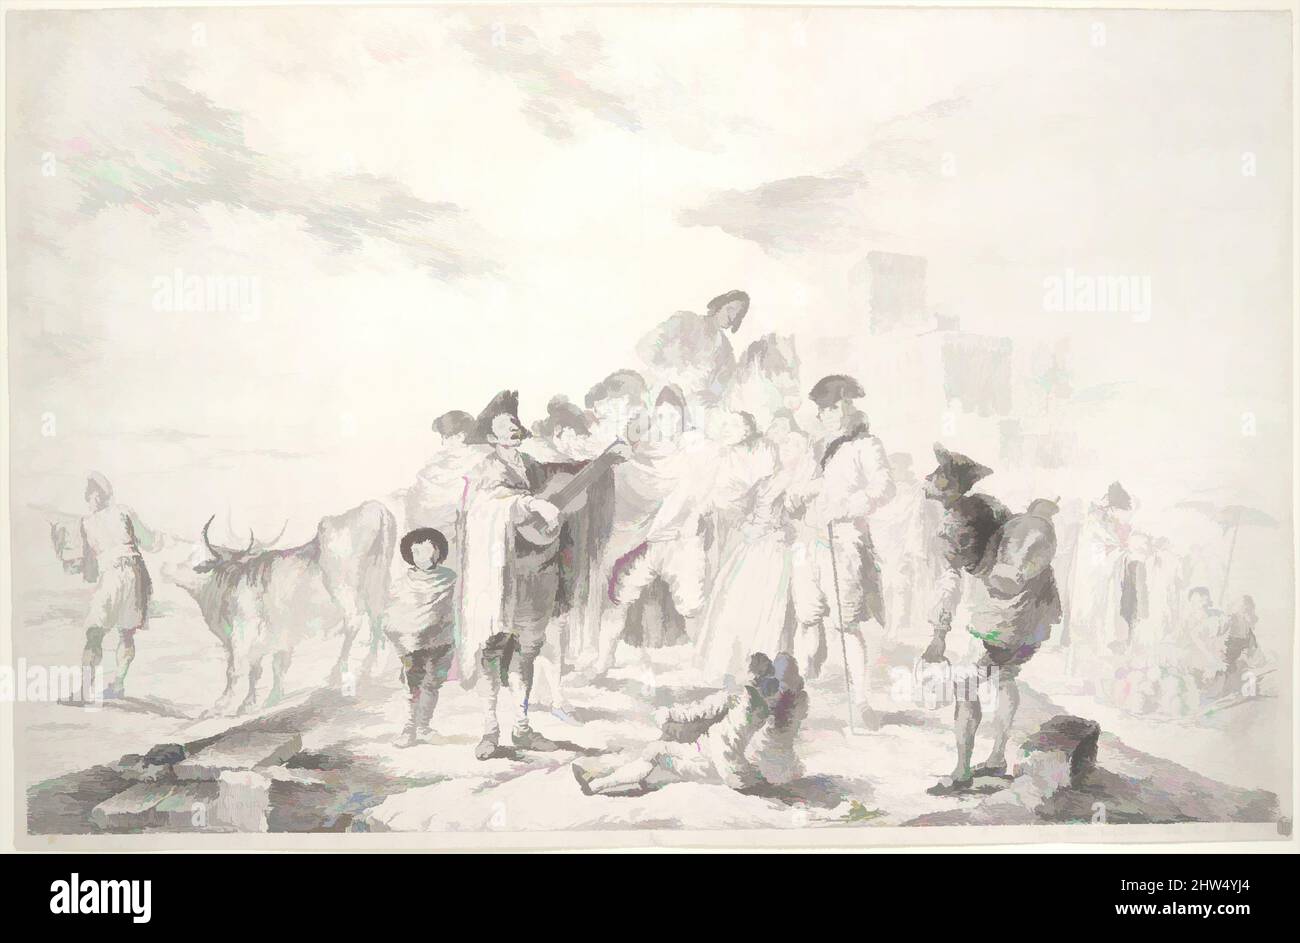 Arte ispirata al chitarrista cieco (El ciego de la guitarra), ca. 1778, incisione; a prova di lavorazione con grafite, foglio: 14" x 21 5/8 poll. (35,5 x 55 cm), Prints, Goya (Francisco de Goya y Lucientes) (spagnolo, Fuendetodos 1746–1828 Bordeaux), nella primavera del 1778 Goya submitted, opere classiche modernizzate da Artotop con un tuffo di modernità. Forme, colore e valore, impatto visivo accattivante sulle emozioni artistiche attraverso la libertà delle opere d'arte in modo contemporaneo. Un messaggio senza tempo che persegue una nuova direzione selvaggiamente creativa. Artisti che si rivolgono al supporto digitale e creano l'NFT Artotop Foto Stock